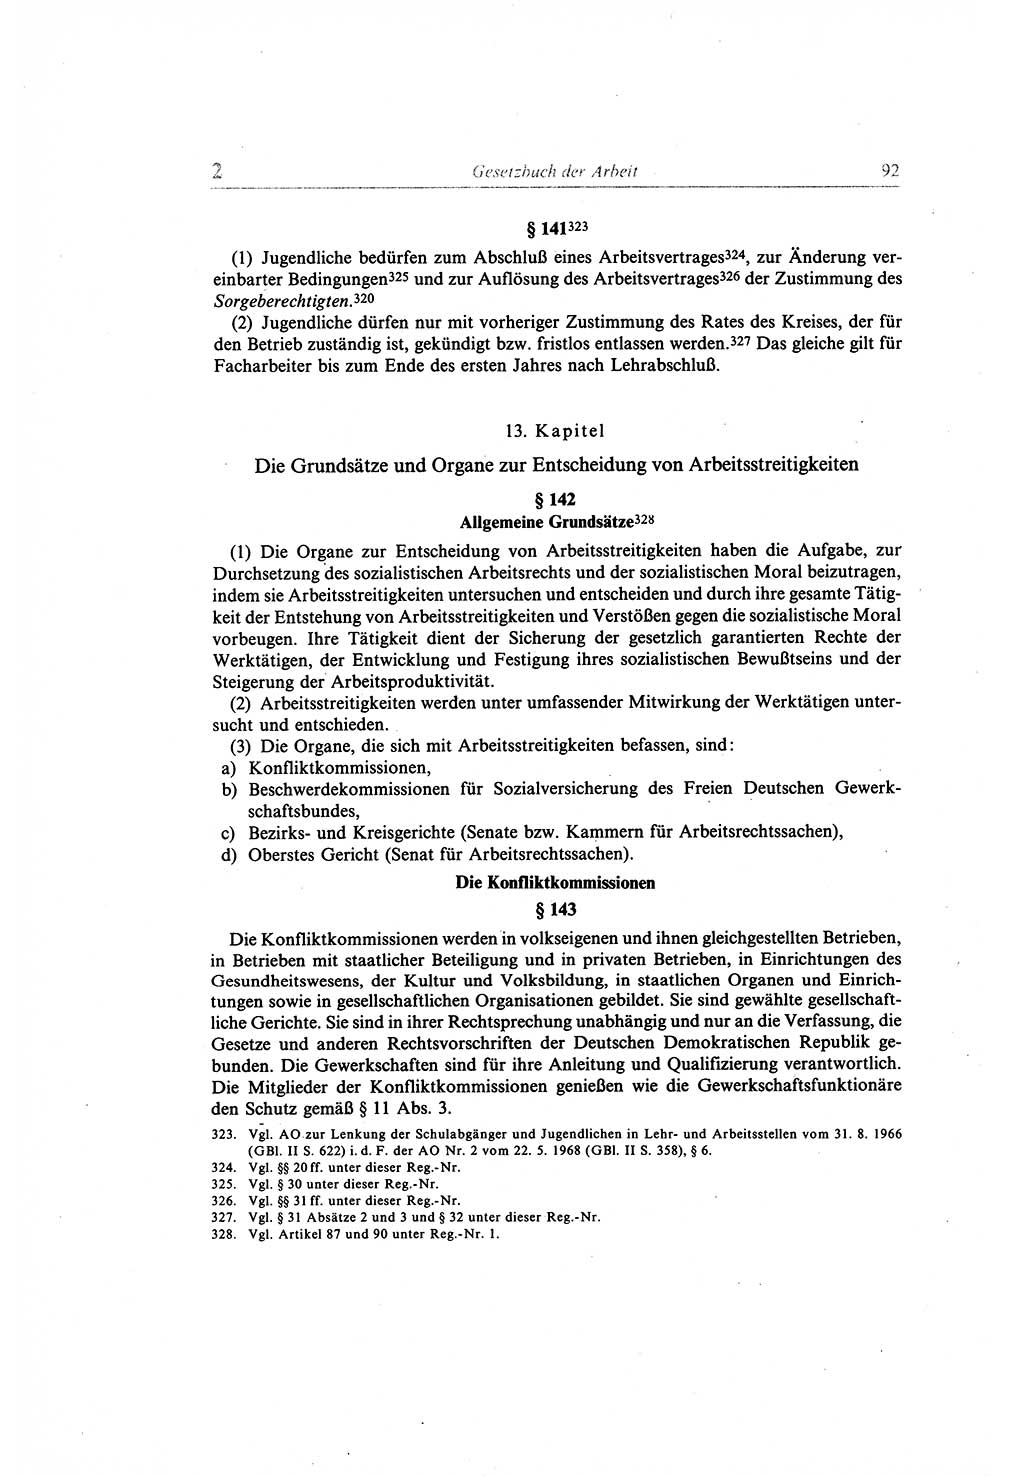 Gesetzbuch der Arbeit (GBA) und andere ausgewählte rechtliche Bestimmungen [Deutsche Demokratische Republik (DDR)] 1968, Seite 92 (GBA DDR 1968, S. 92)